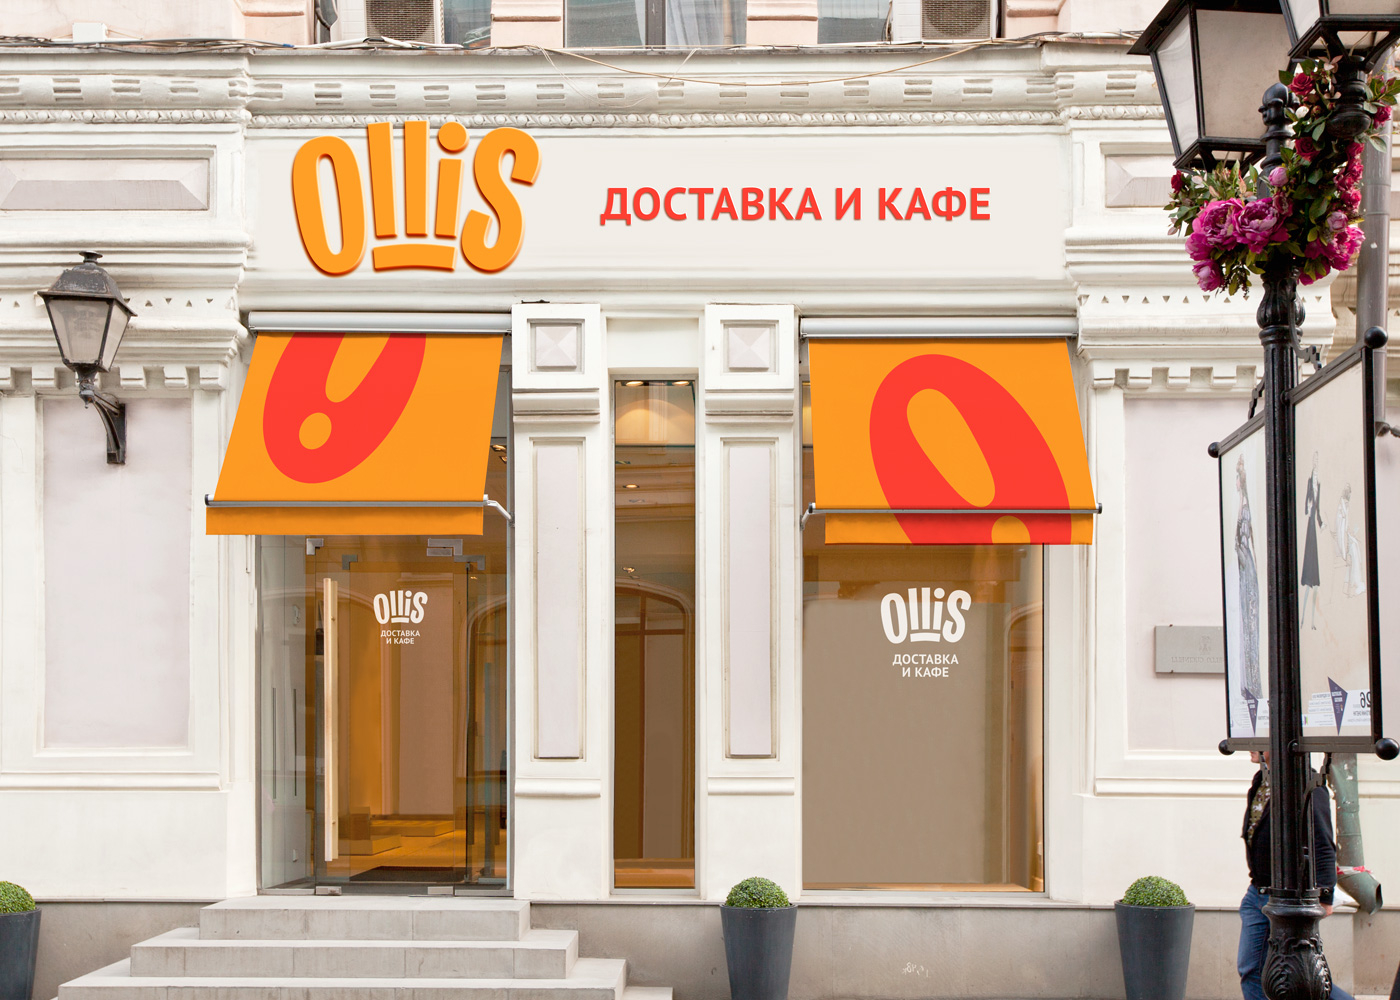 Оформление фасада сети ресторанов Ollis